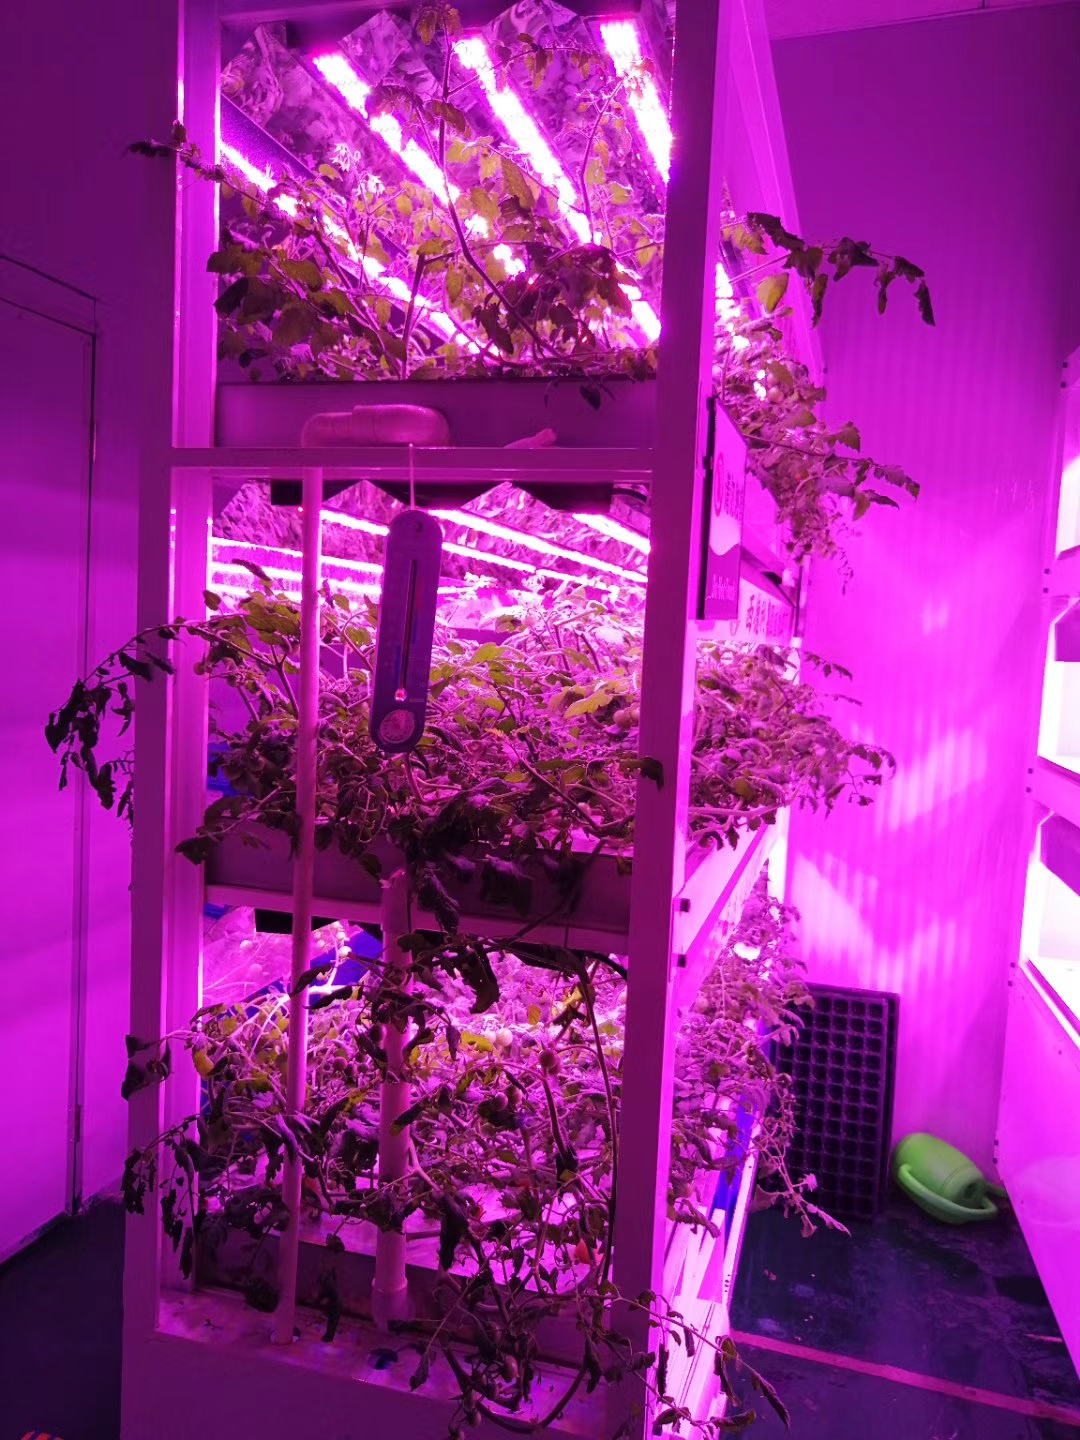 2016年6月份，习近平总书记在北京展览馆参观国家“十二五”科技创新成就展的时候，中国农科院的展示的智能LED植物工厂展区的时候，询问了蔬菜的种植、生长情况。